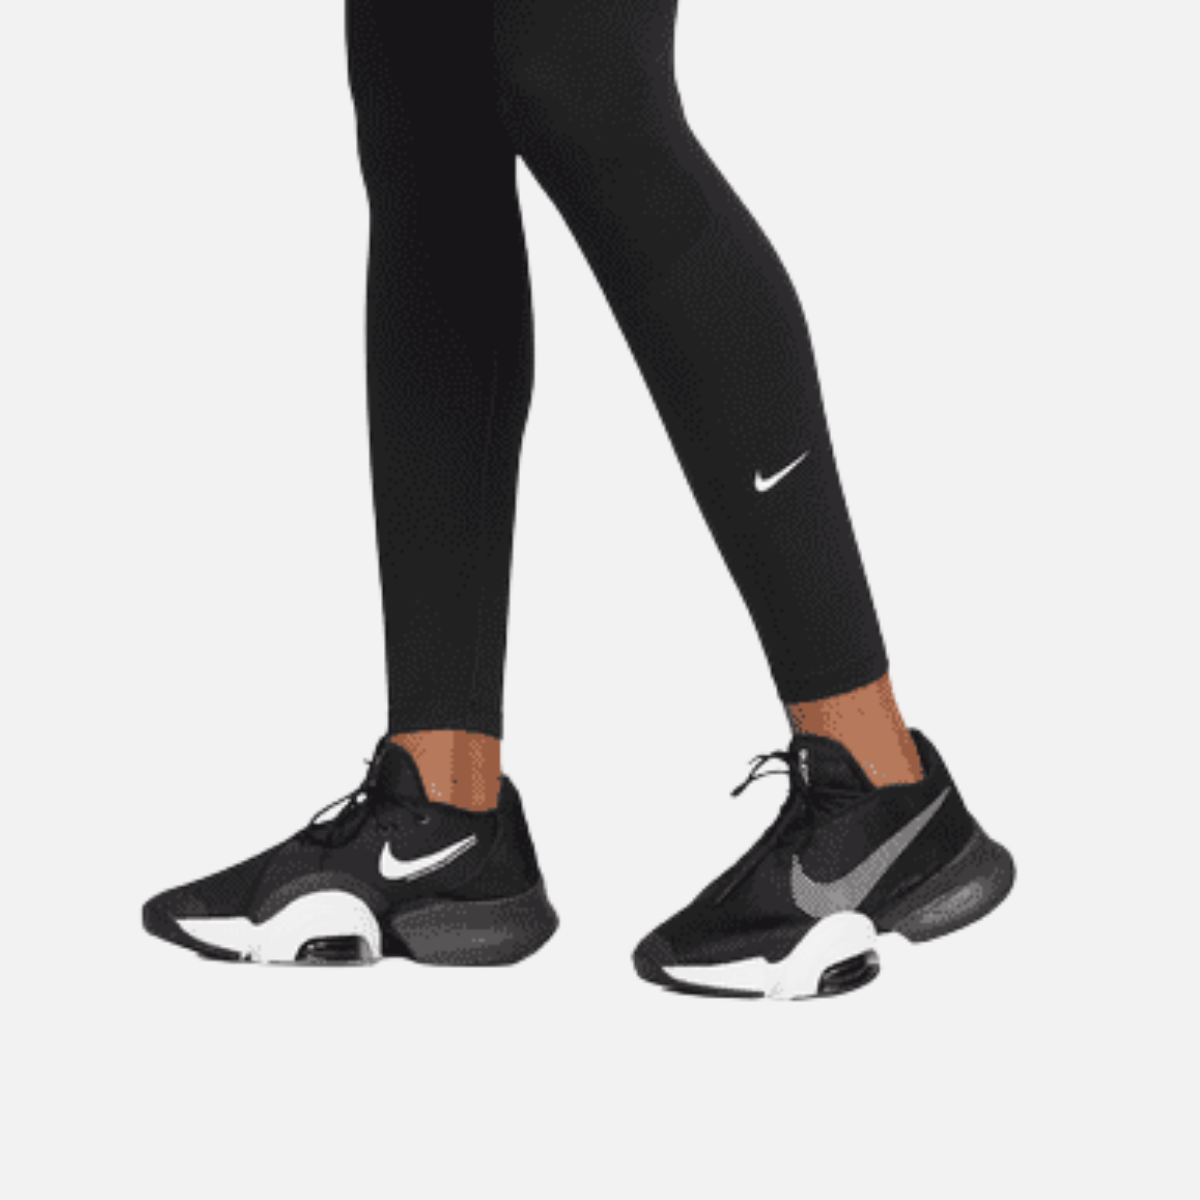 Nike One Women's High-Rise Leggings -Black/White